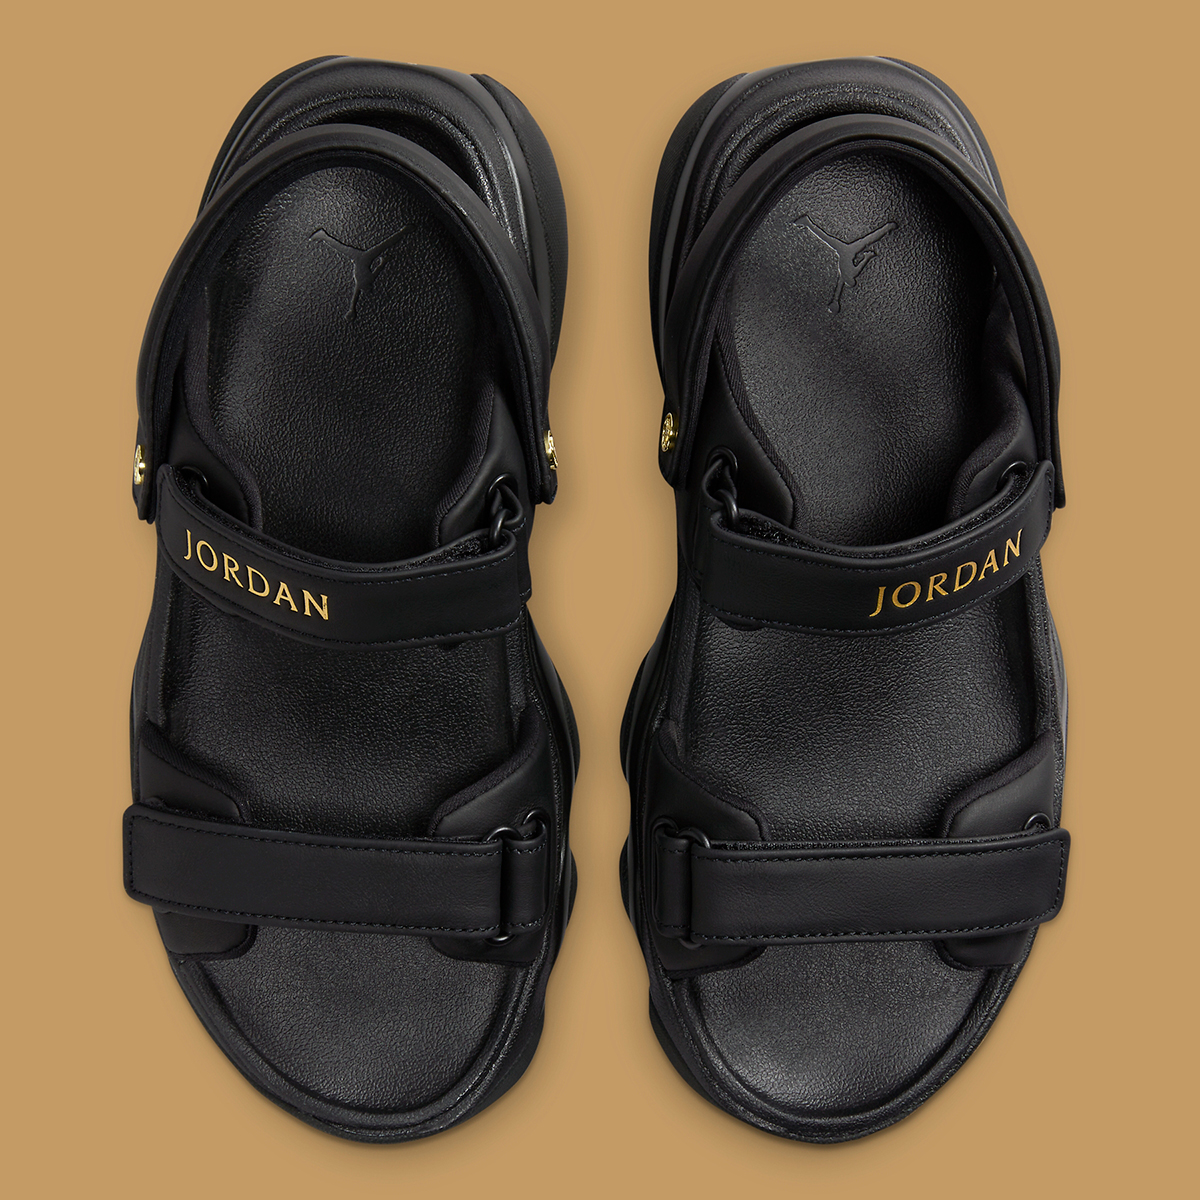 Jordan Agitator Sandal Fn5036 001 6